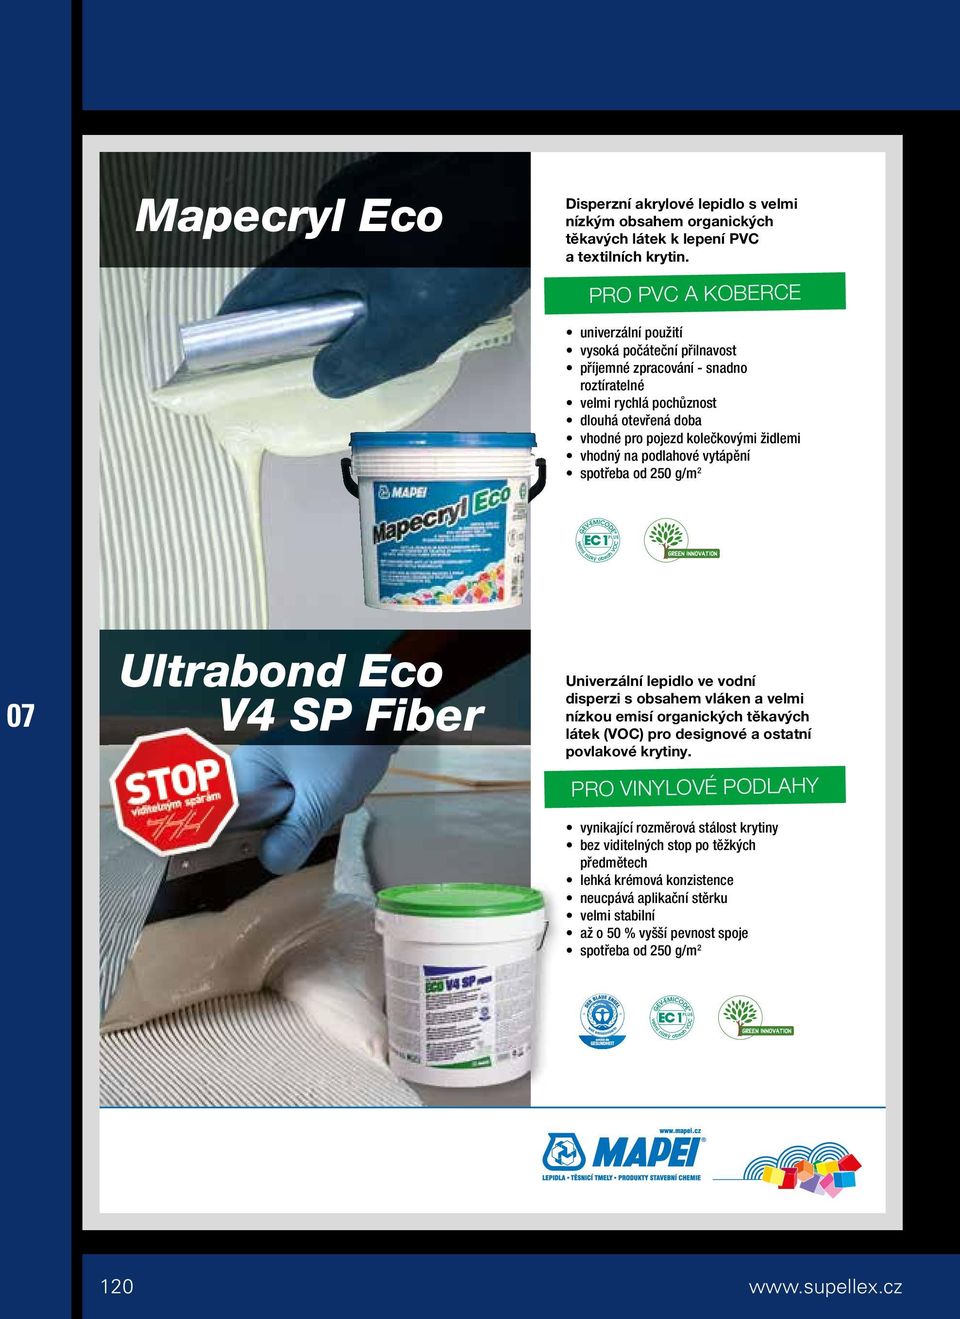 vhodný na podlahové vytápění spotřeba od 250 g/m 2 Ultrabond Eco V4 SP Fiber Univerzální lepidlo ve vodní disperzi s obsahem vláken a velmi nízkou emisí organických těkavých látek (VOC) pro